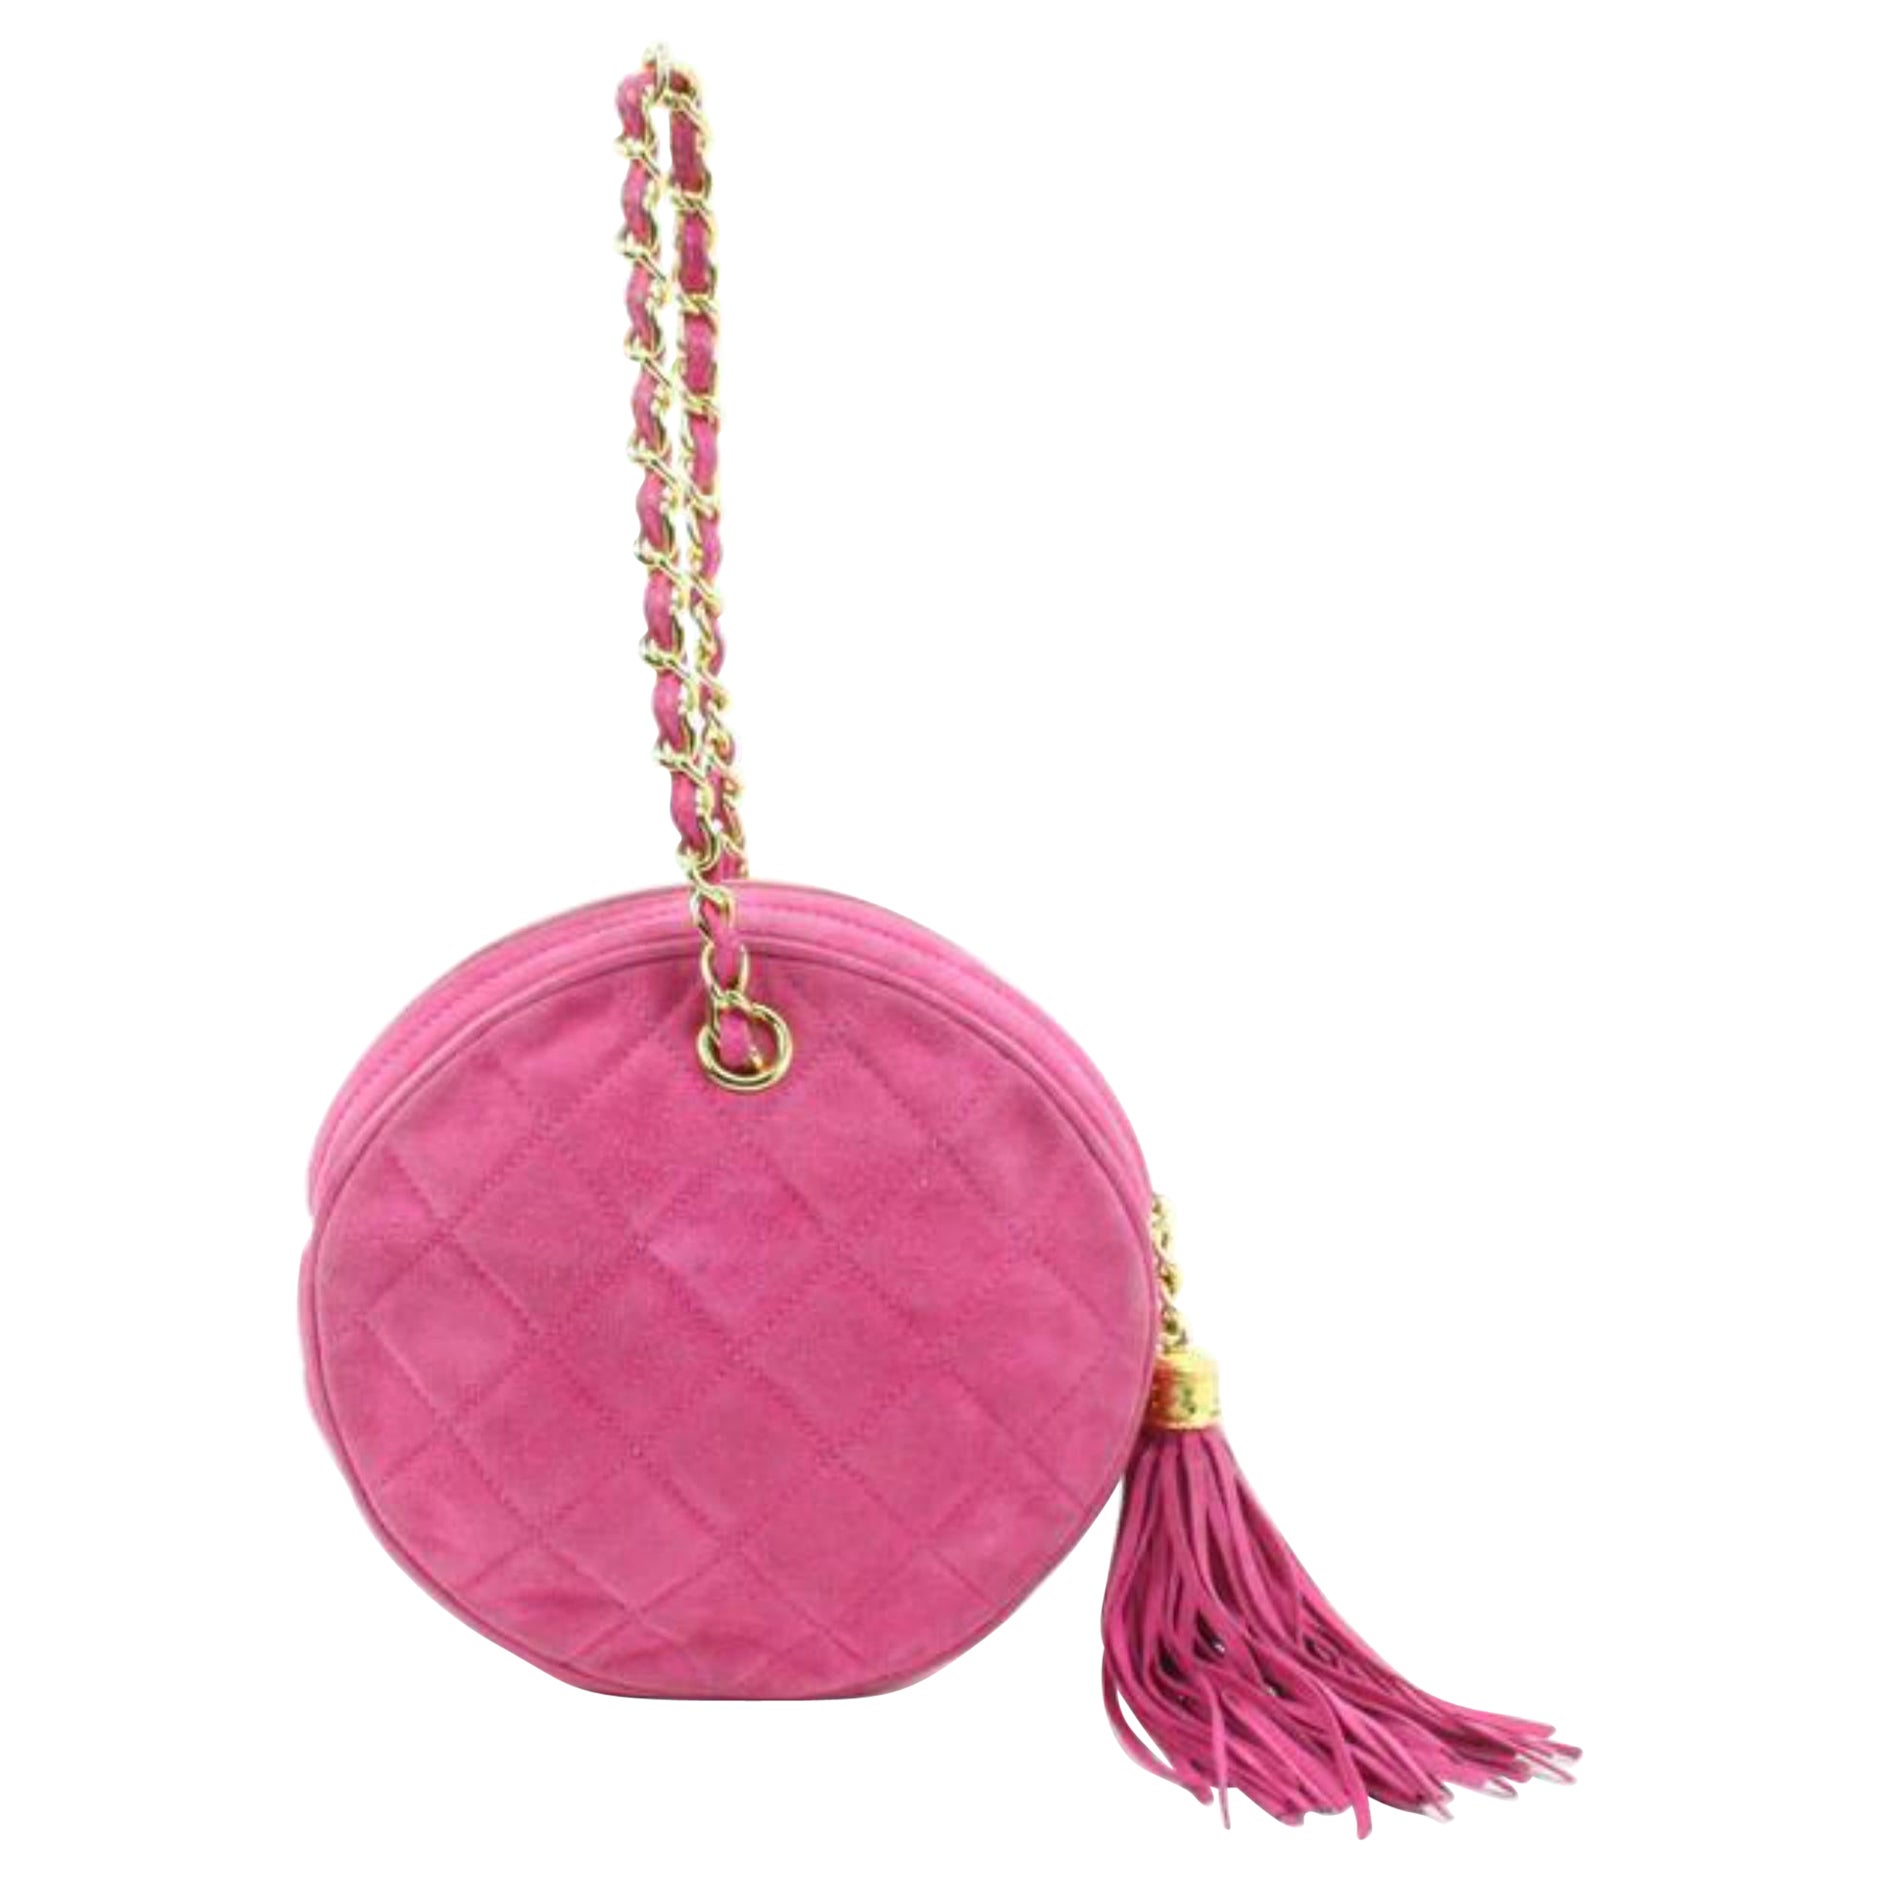 Chanel Hot Pink Gesteppte Wildleder Fransen Quaste Runde Clutch an Kette88cz425s